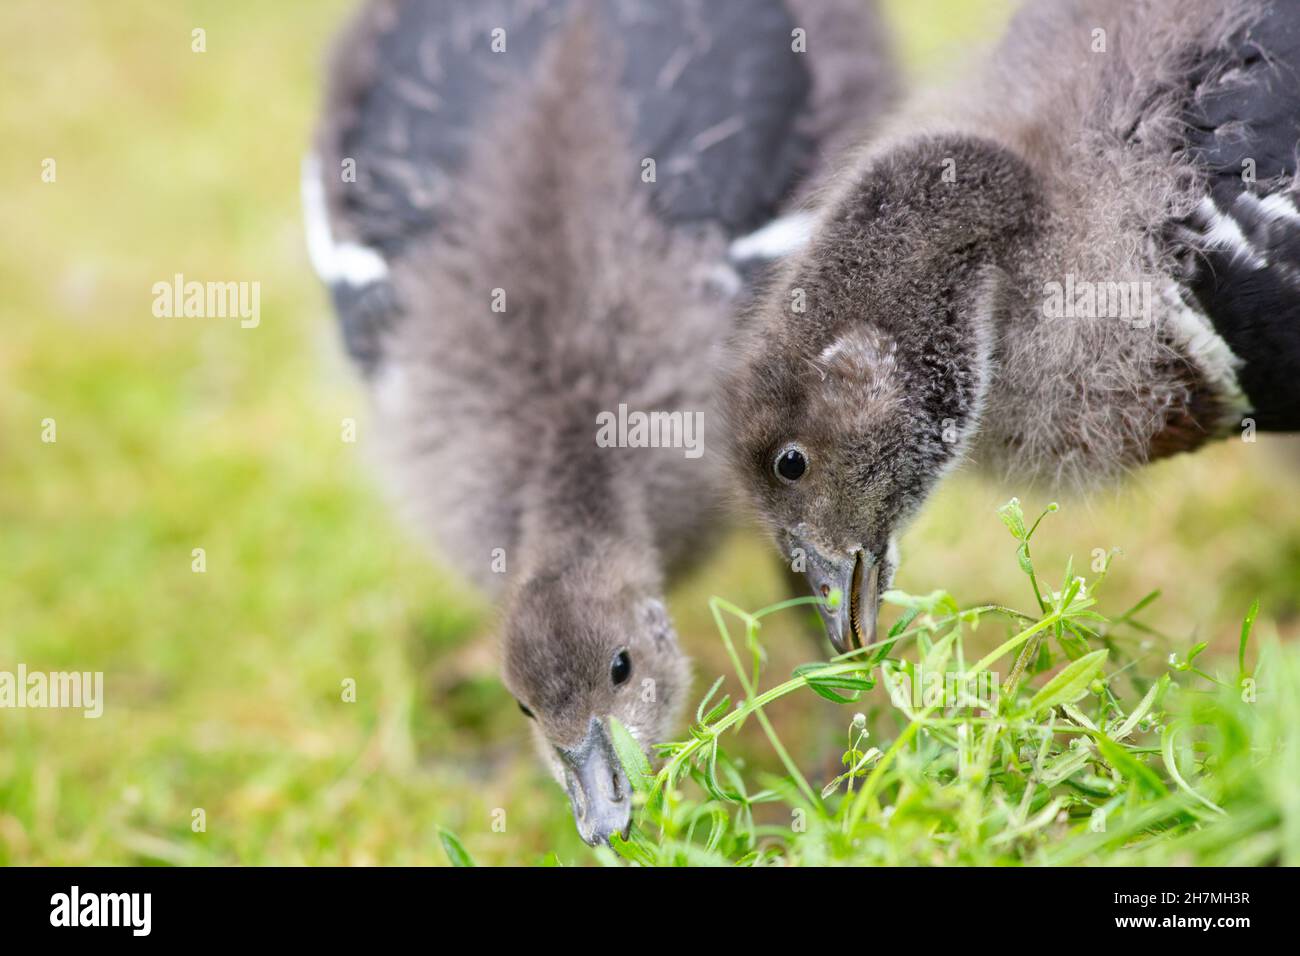 Geese de pecho rojo (Branta ruficollis). Aves o goslings juveniles inmaduros. Alimentación de Goosegrass (Galium aparine). Foto de stock